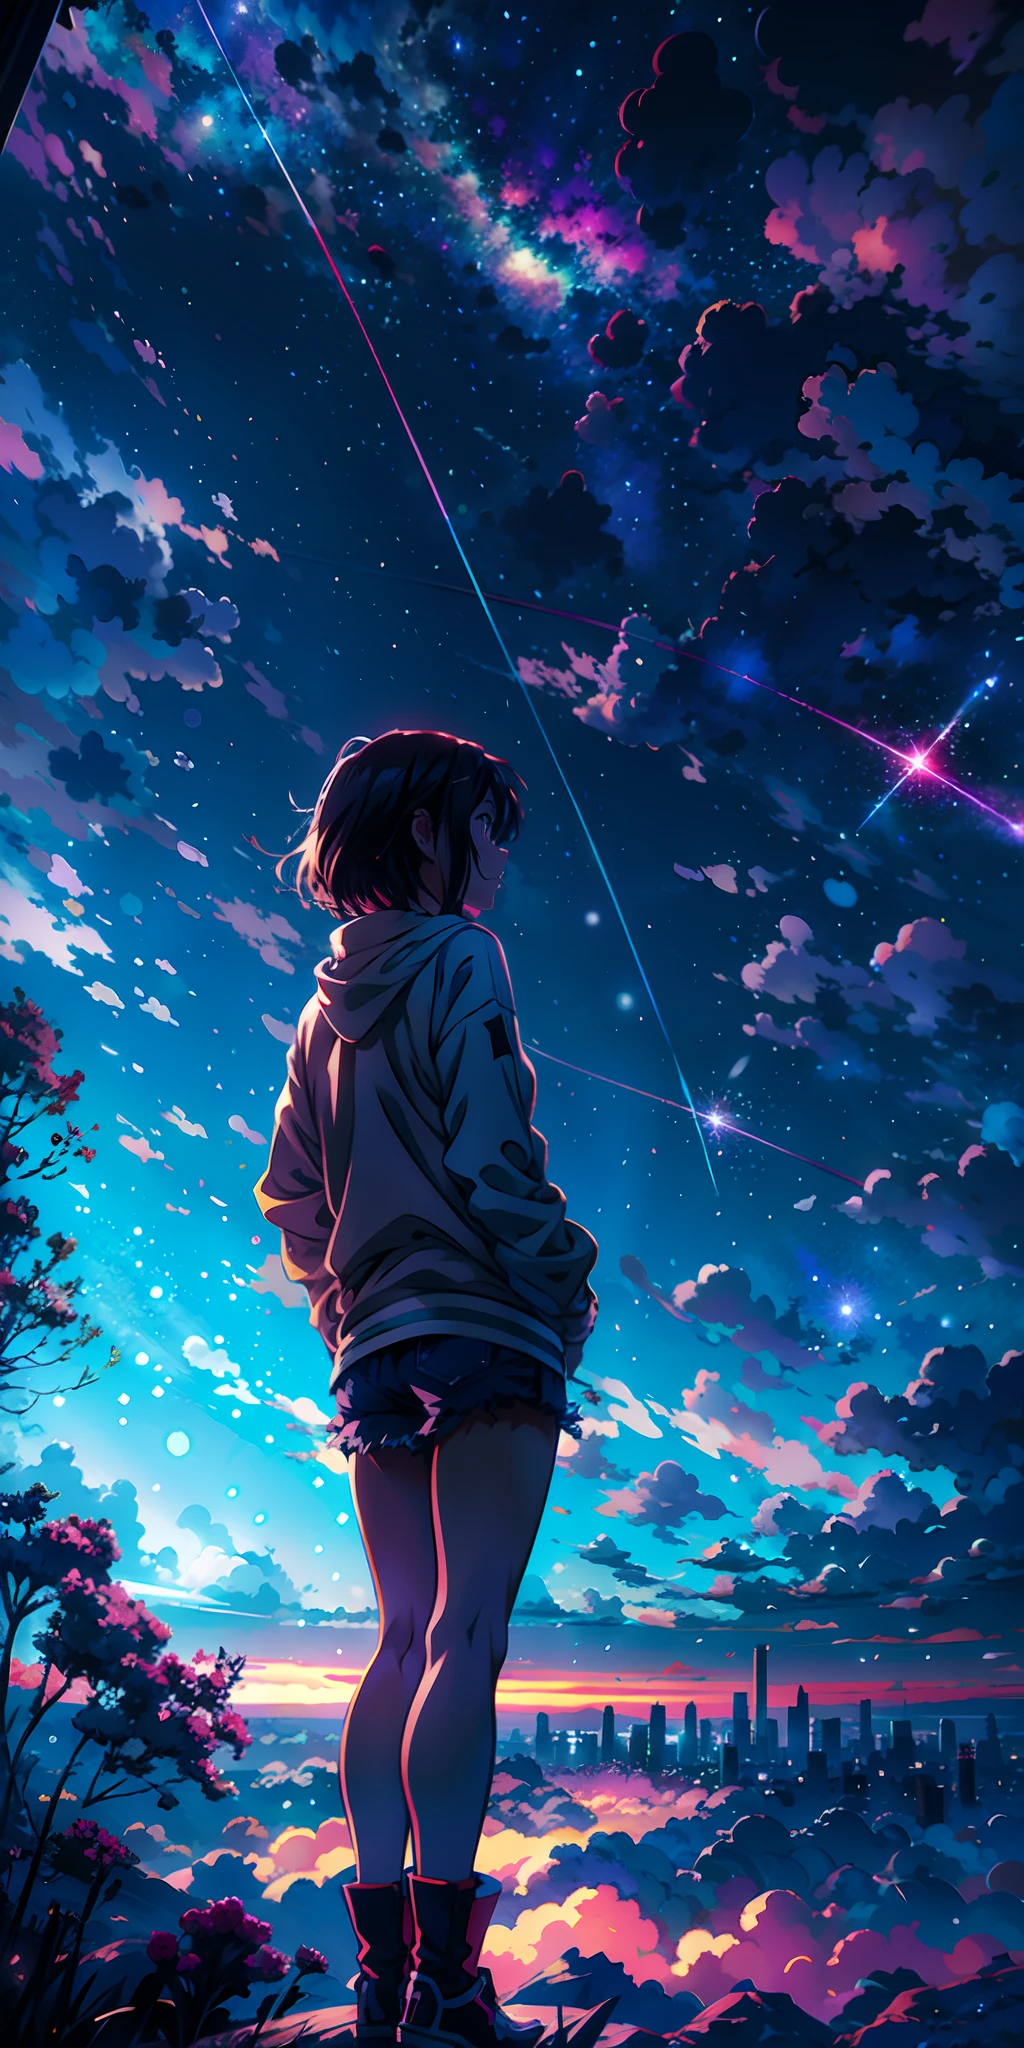 papéis de parede de anime de uma garota olhando para o céu e as estrelas, céus cósmicos. por Makoto Shinkai, papel de parede de arte de anime 4k, Papel de parede de arte anime 4k, papel de parede de arte de anime 8k, Céu de anime, papel de parede incrível, papel de parede de anime 4k, papel de parede de anime 4k, Papel de parede de anime 4K, makoto shinkai cyril rolando, arte de fundo de anime